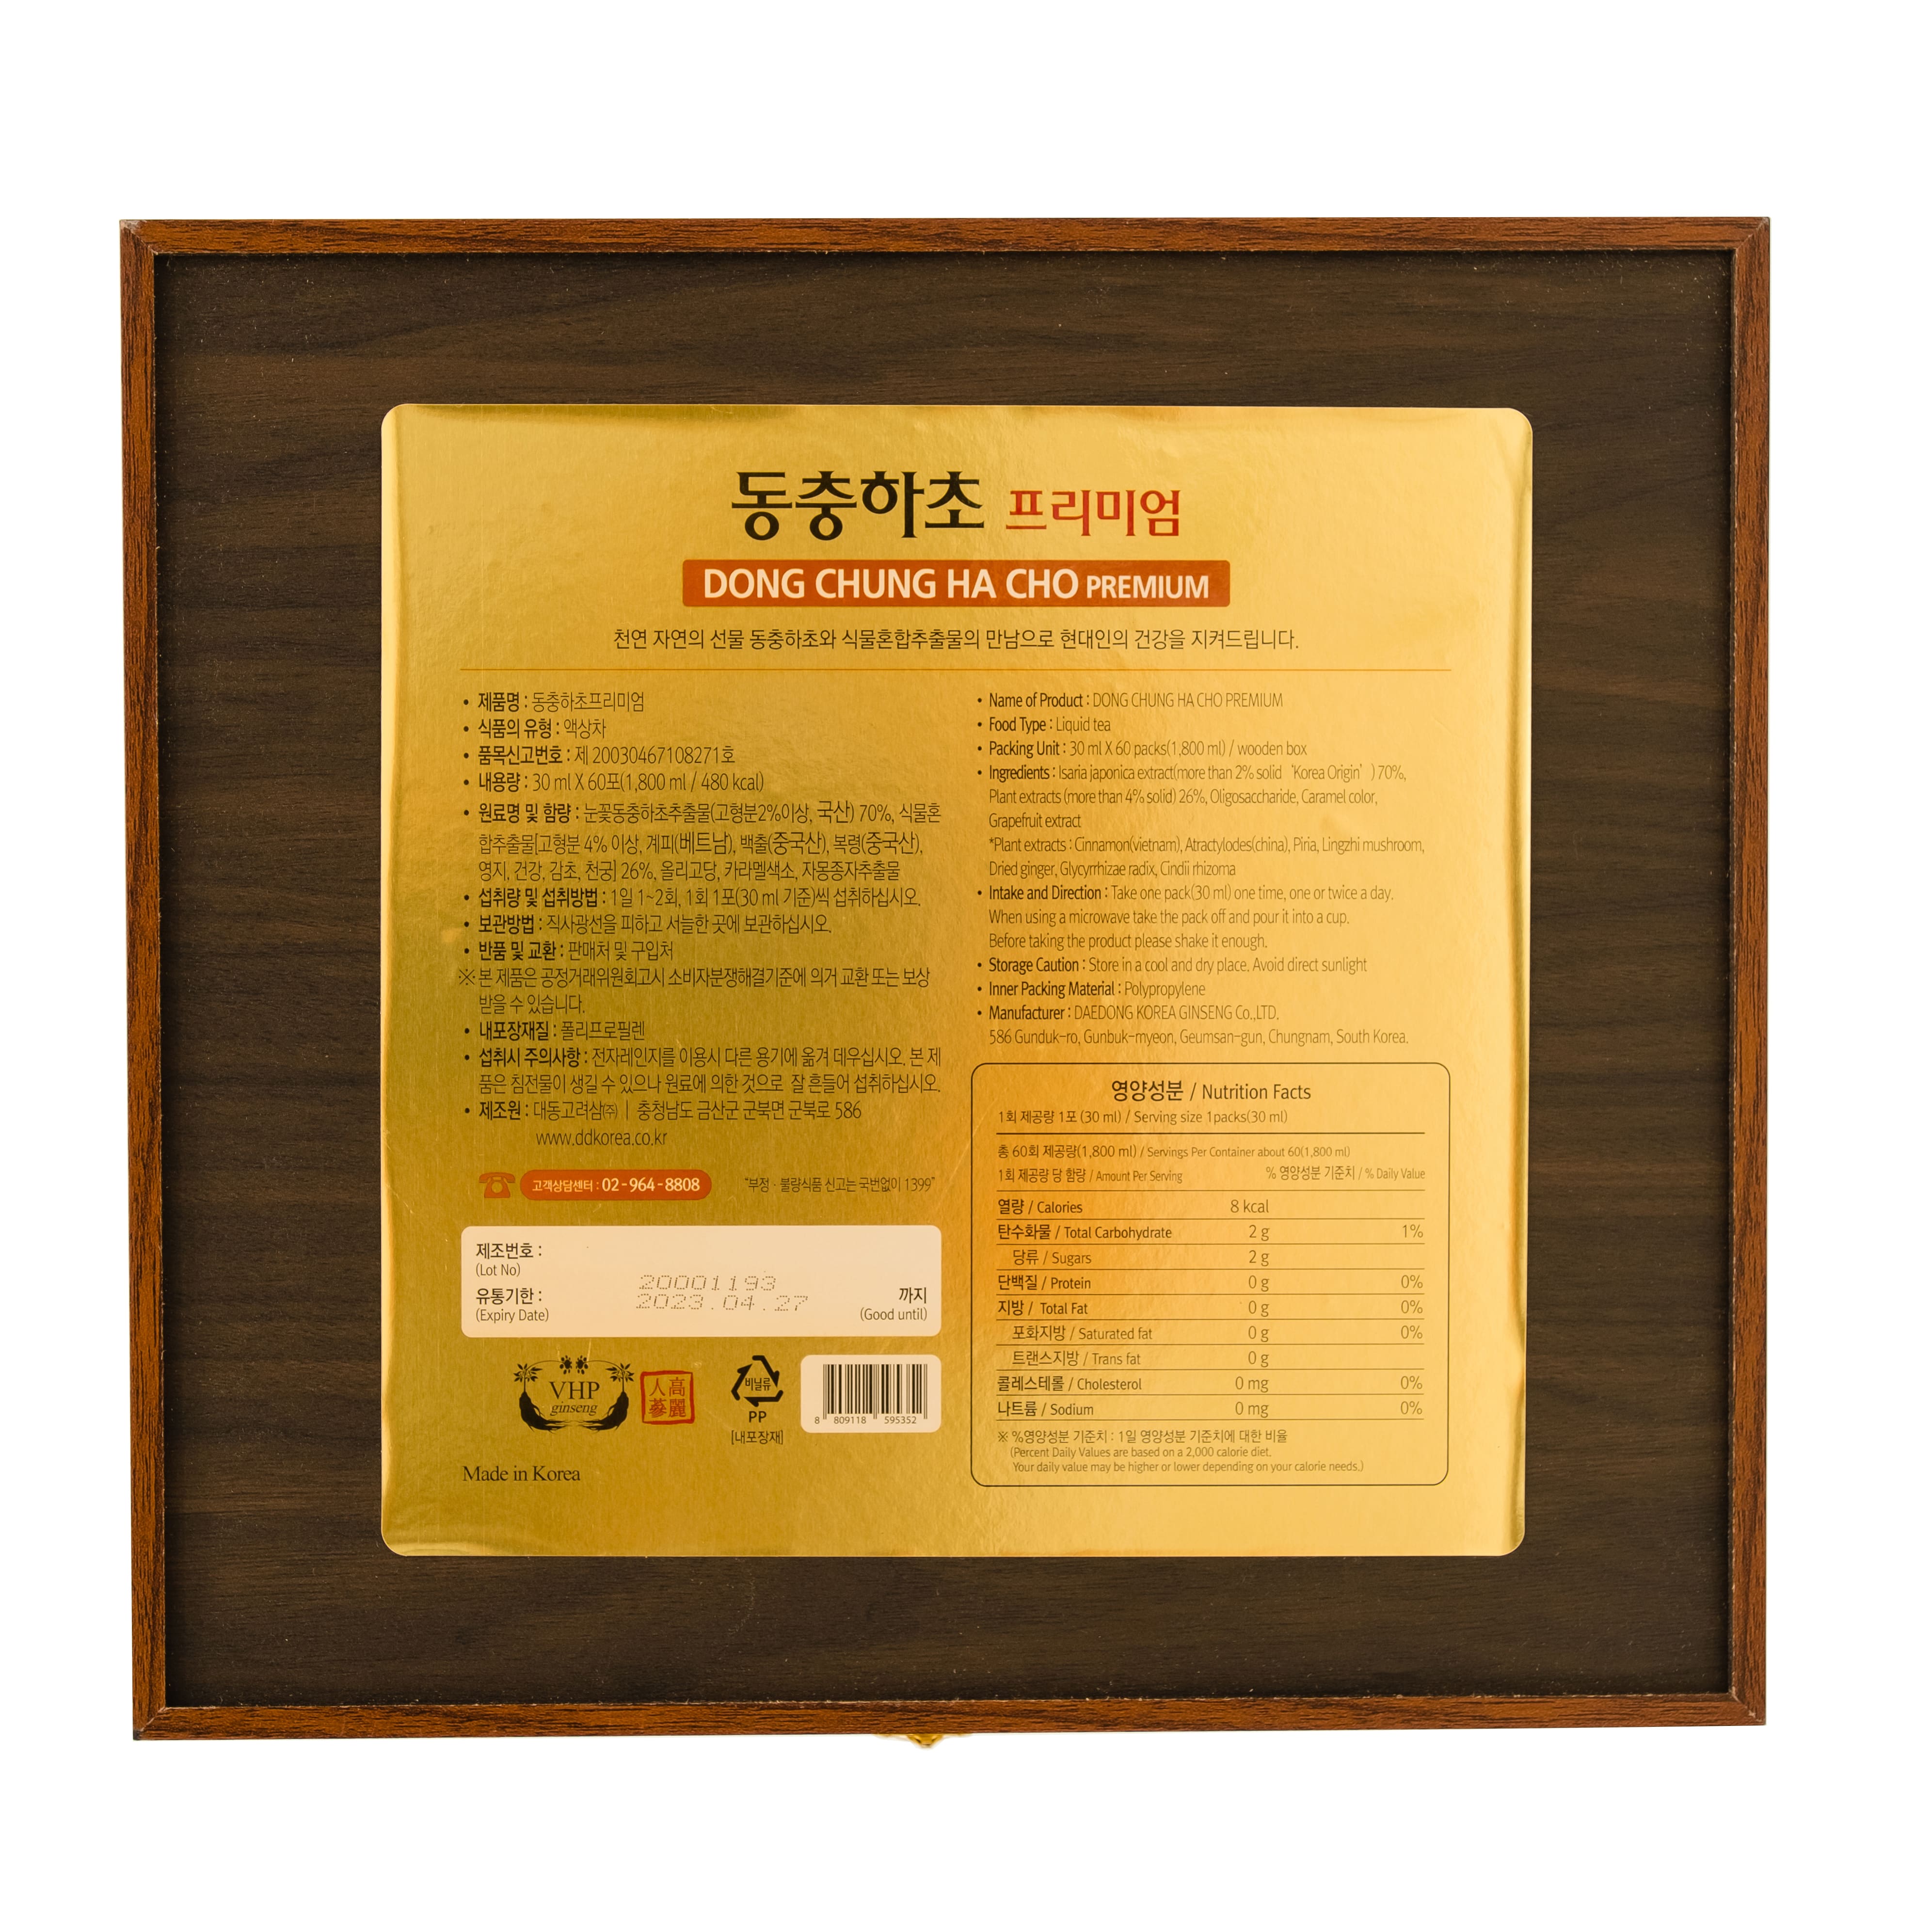 Nước đông trùng hạ thảo Hàn Quốc hộp gỗ 60 gói Daedong Korea Ginseng - Tăng cường sinh lý, bồi bổ phế thận, ổn định nội tiết tố